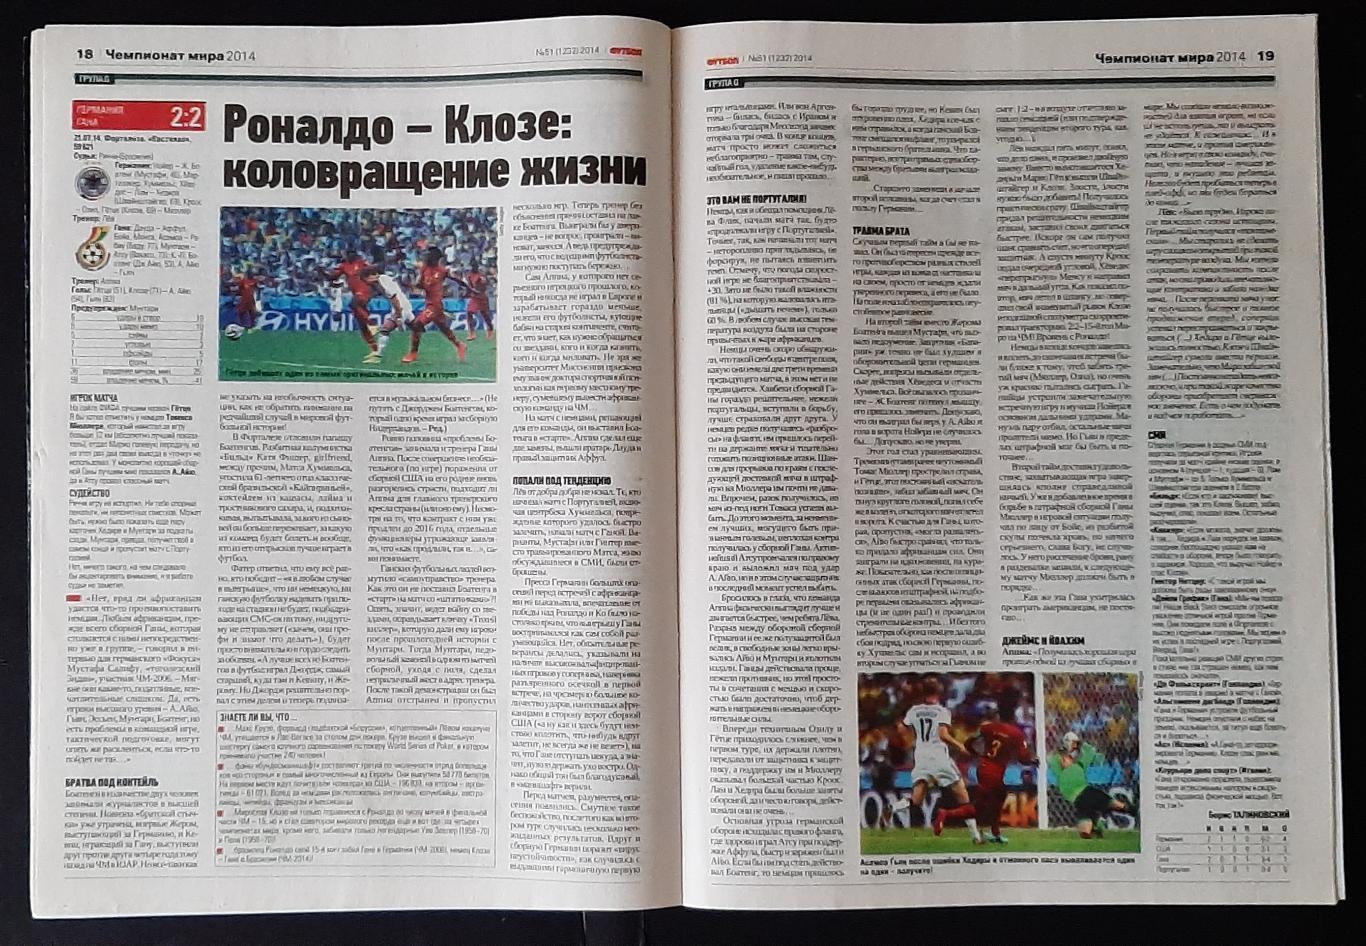 Журнал Футбол # 51 2014 матчі Чемпіонату світу. 5